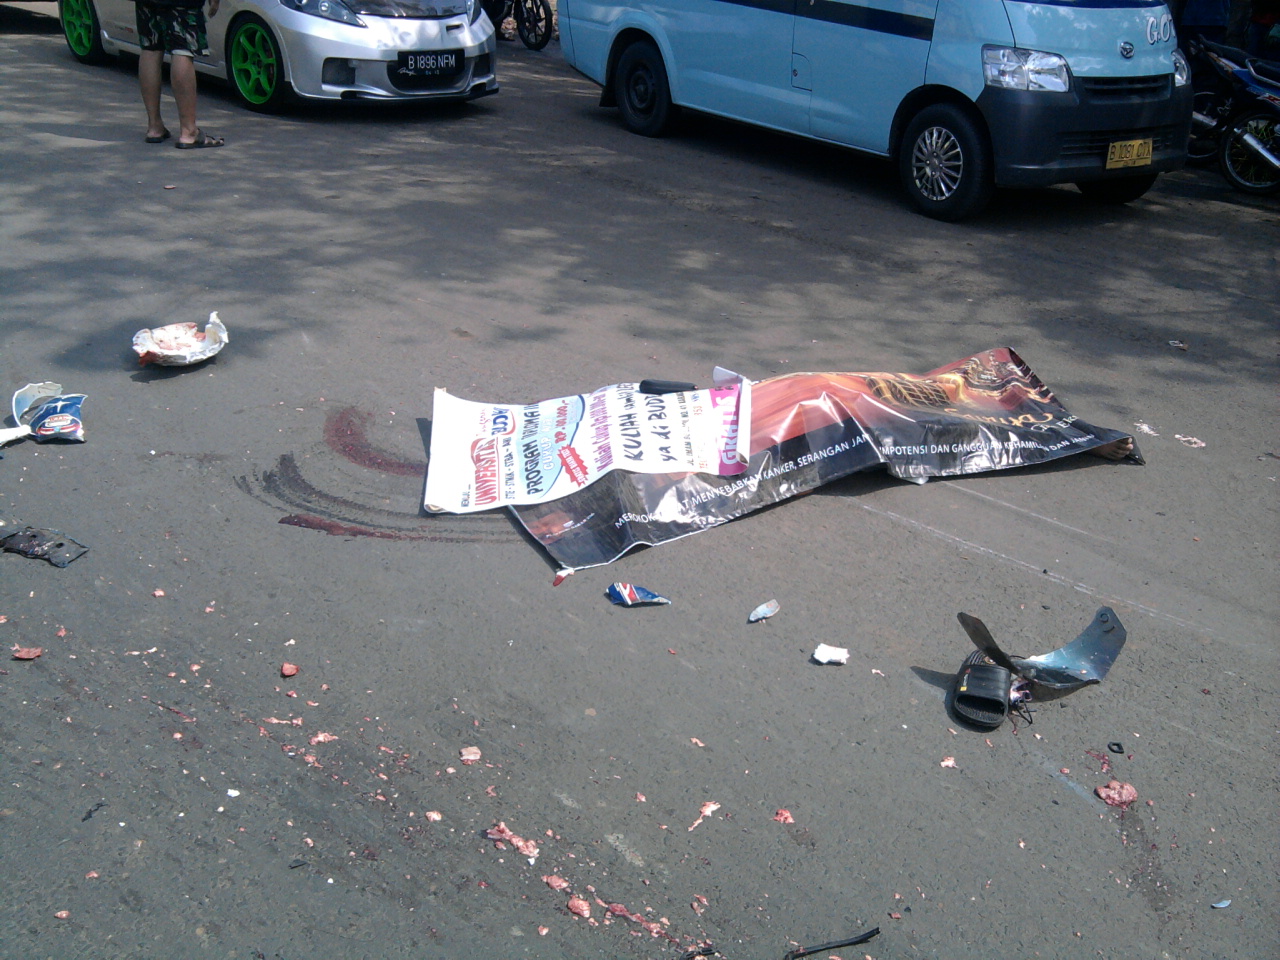  Gambar kecelakaan tragis  di jl raya serang km 14 cikupa 29 